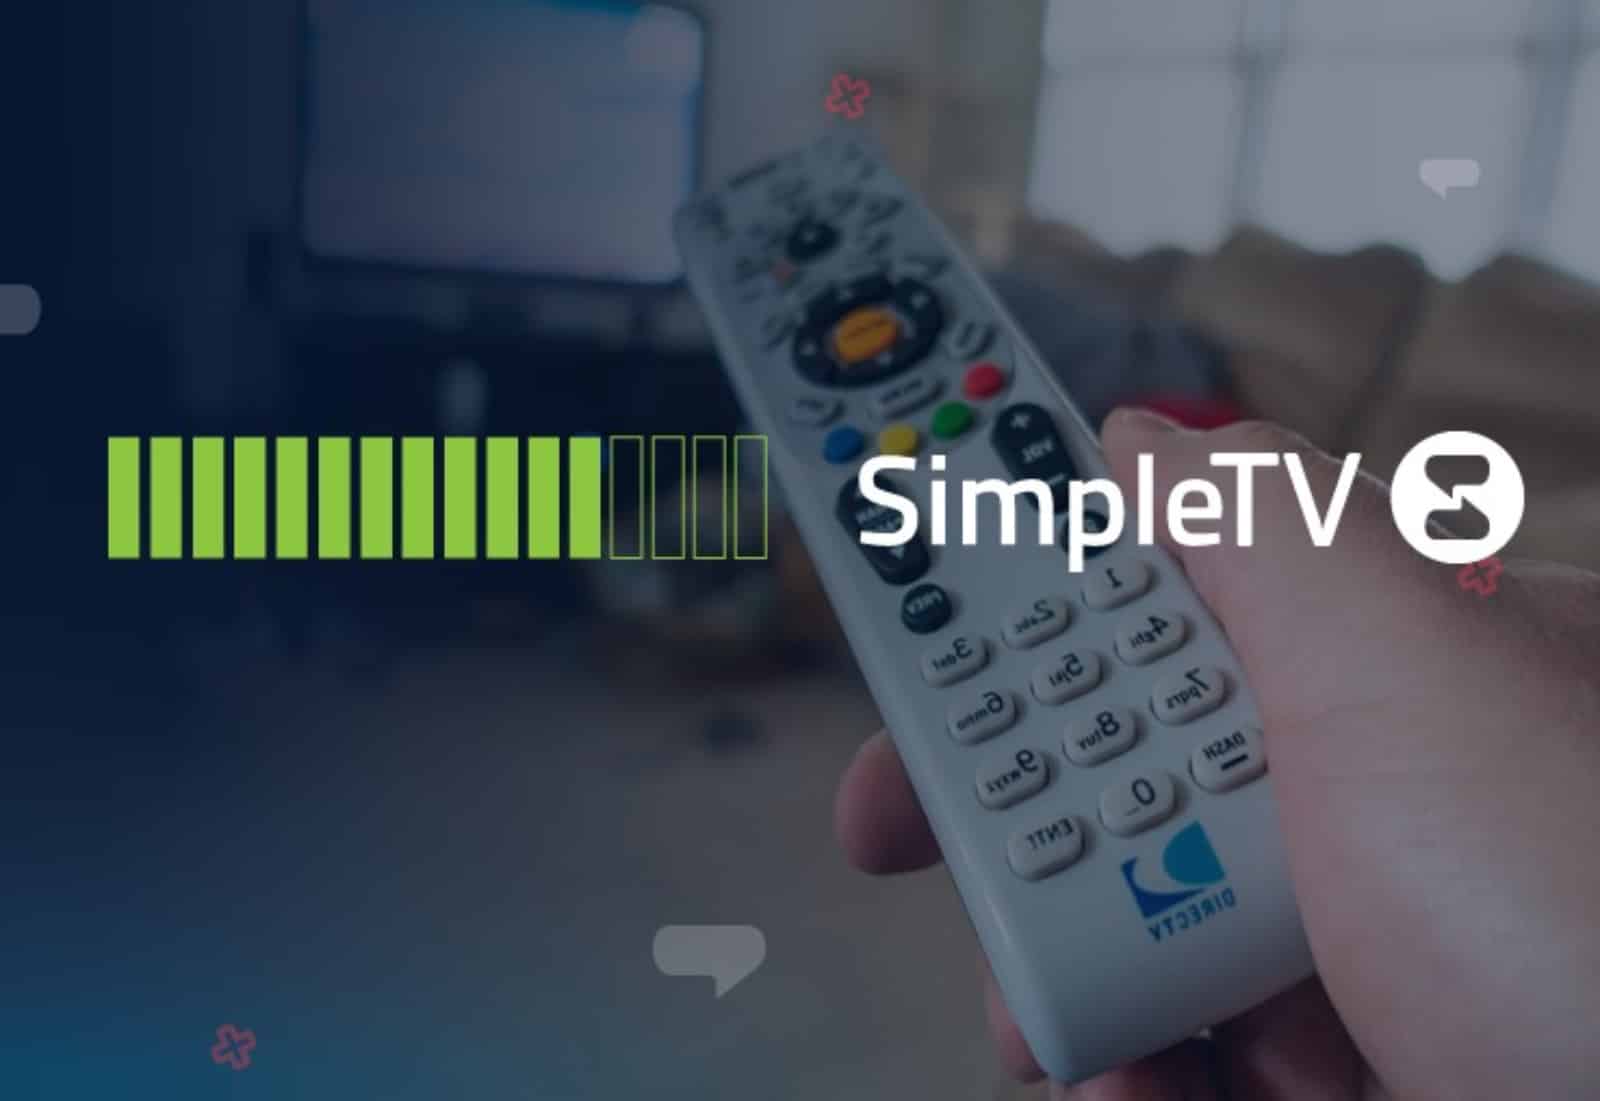 SimpleTV bajará el precio de su servicio, conoce cómo quedaron sus planes